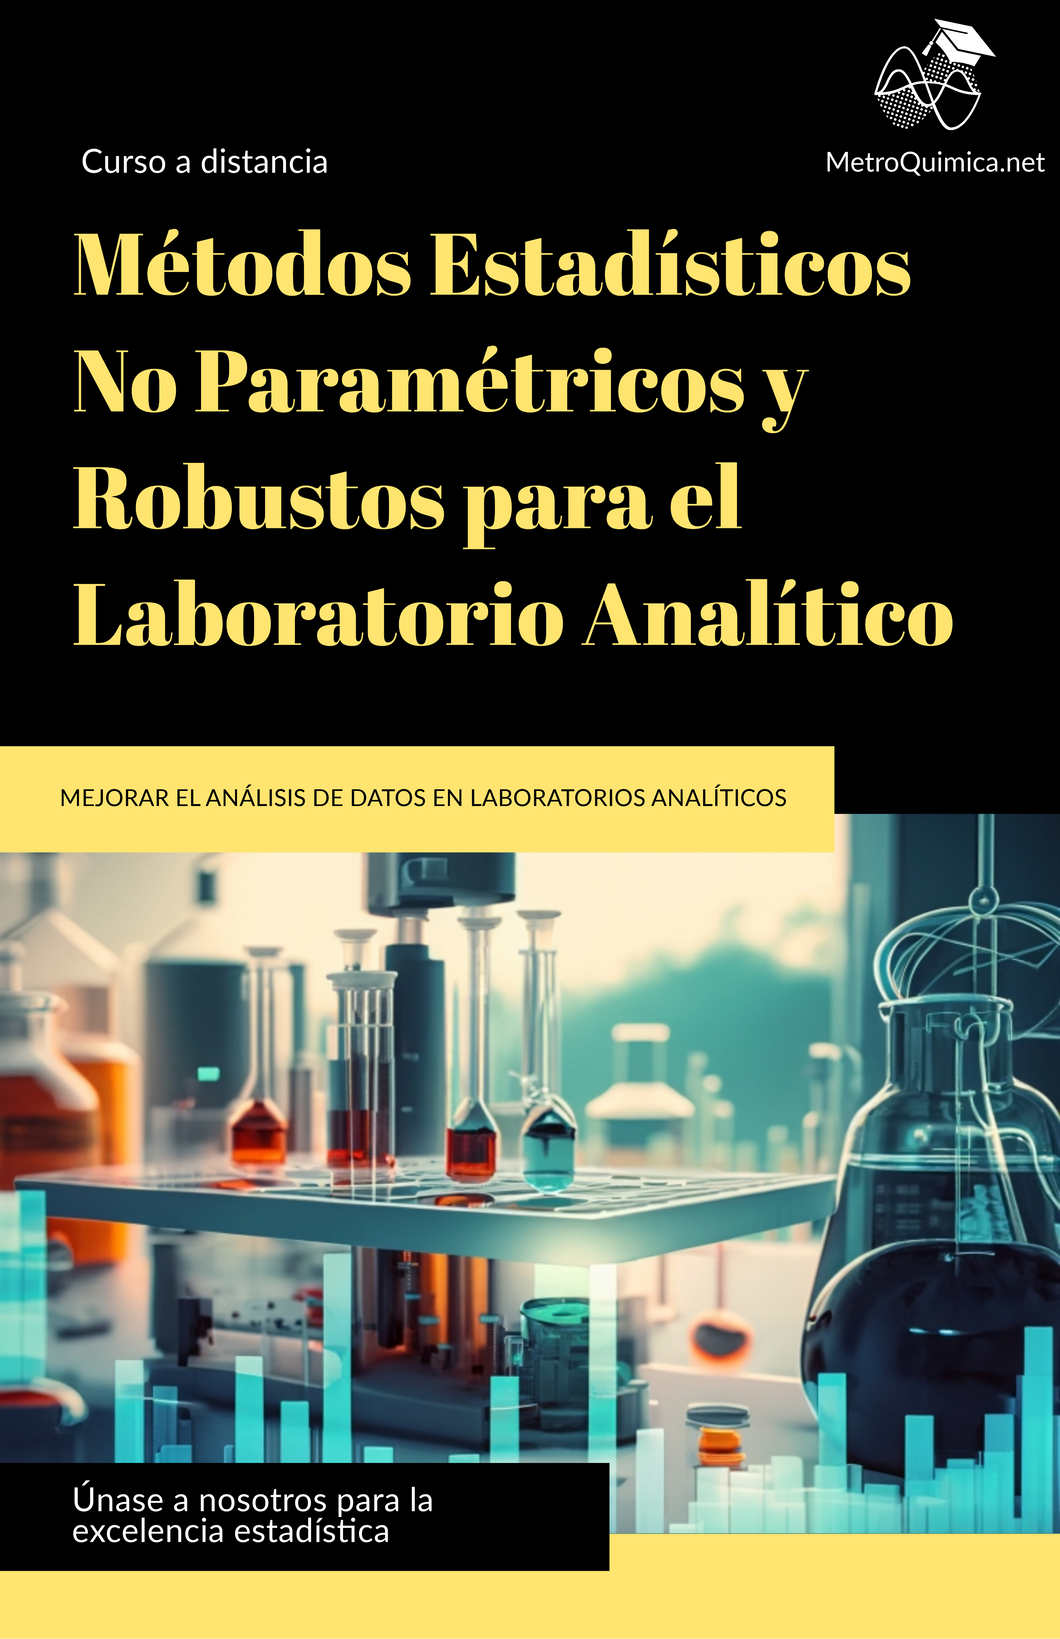 Métodos Estadísticos No Paramétricos y Robustos para el Laboratorio Analítico